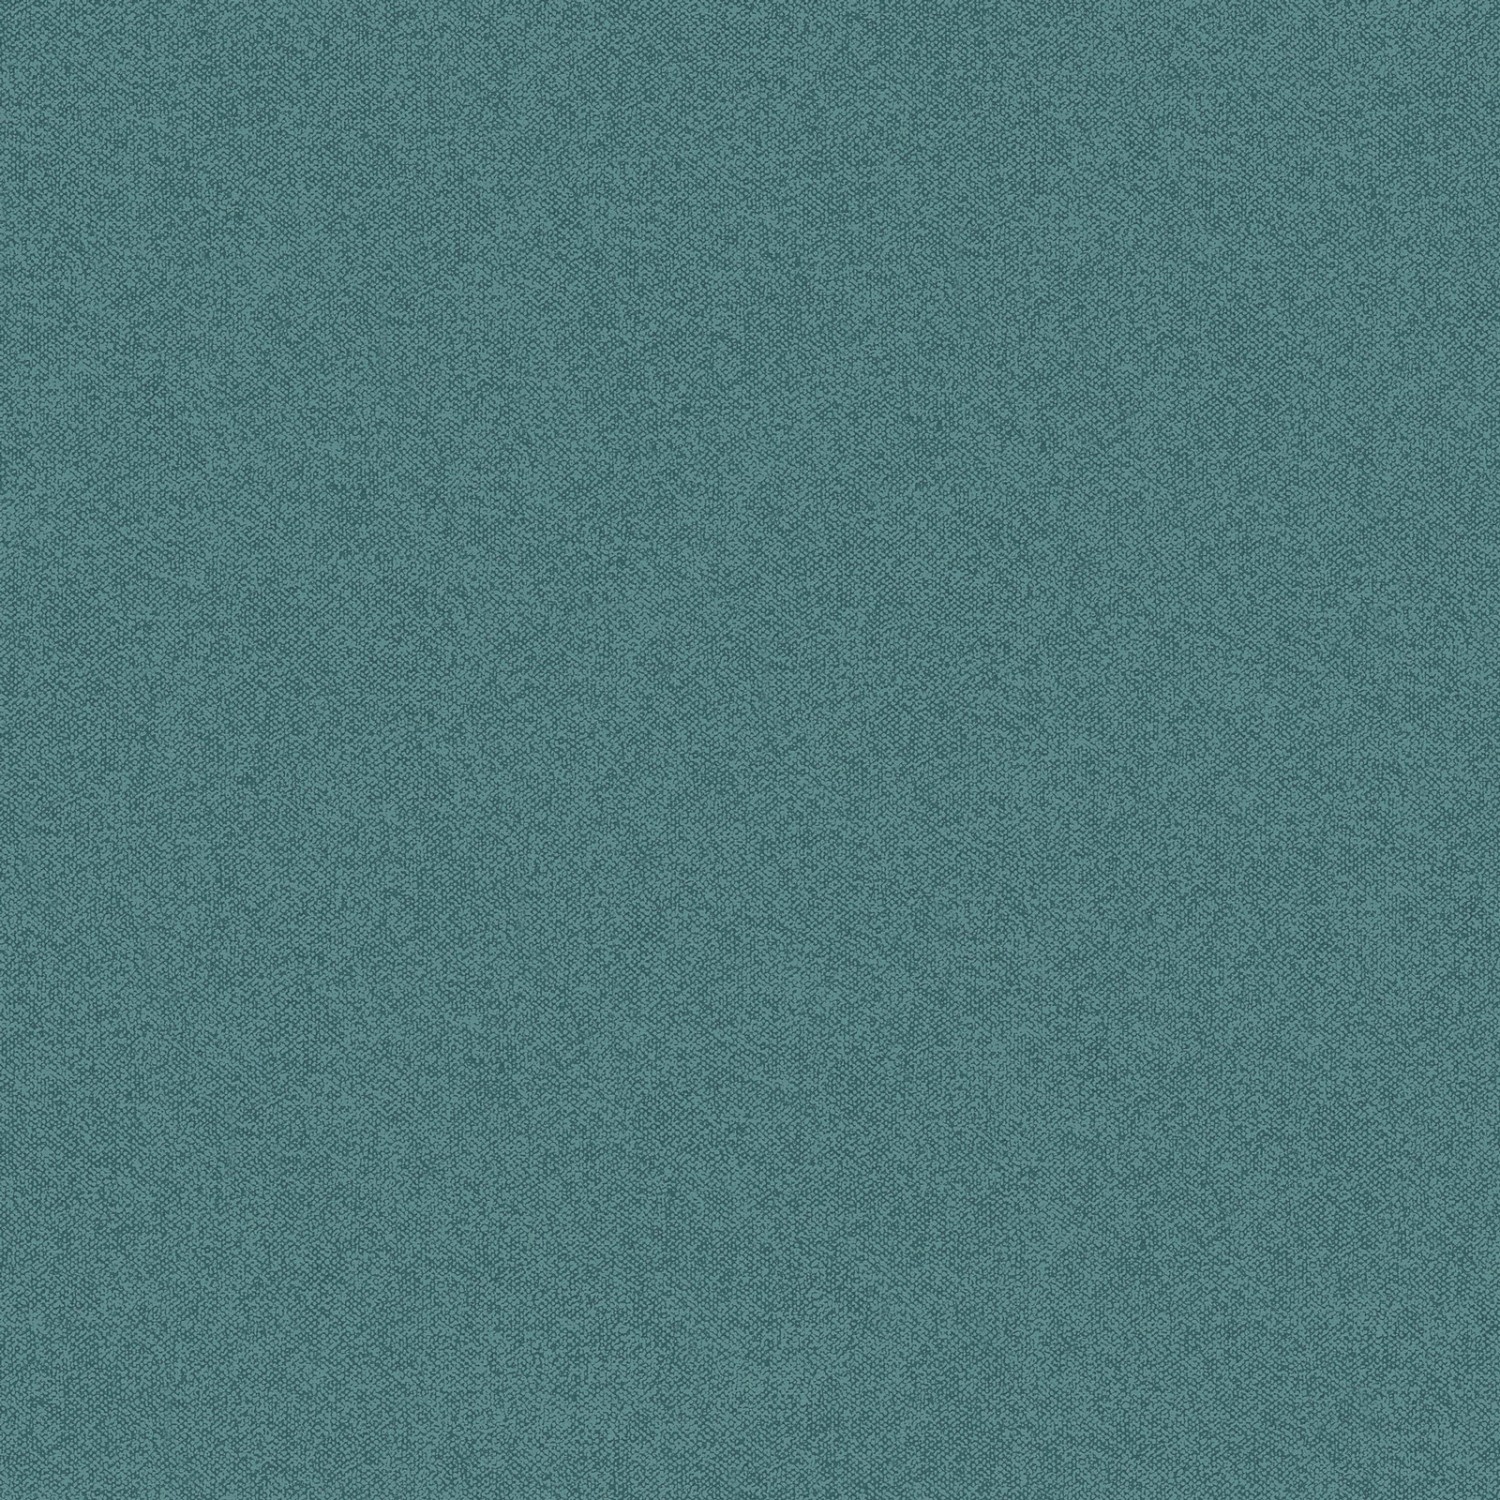 Bricoflor Uni Vliestapete in Petrol Einfarbige Tapete mit Vinyl Textil Struktur in Türkis Moderne Vlies Wandtapete Schlicht in Blau Grün von Bricoflor